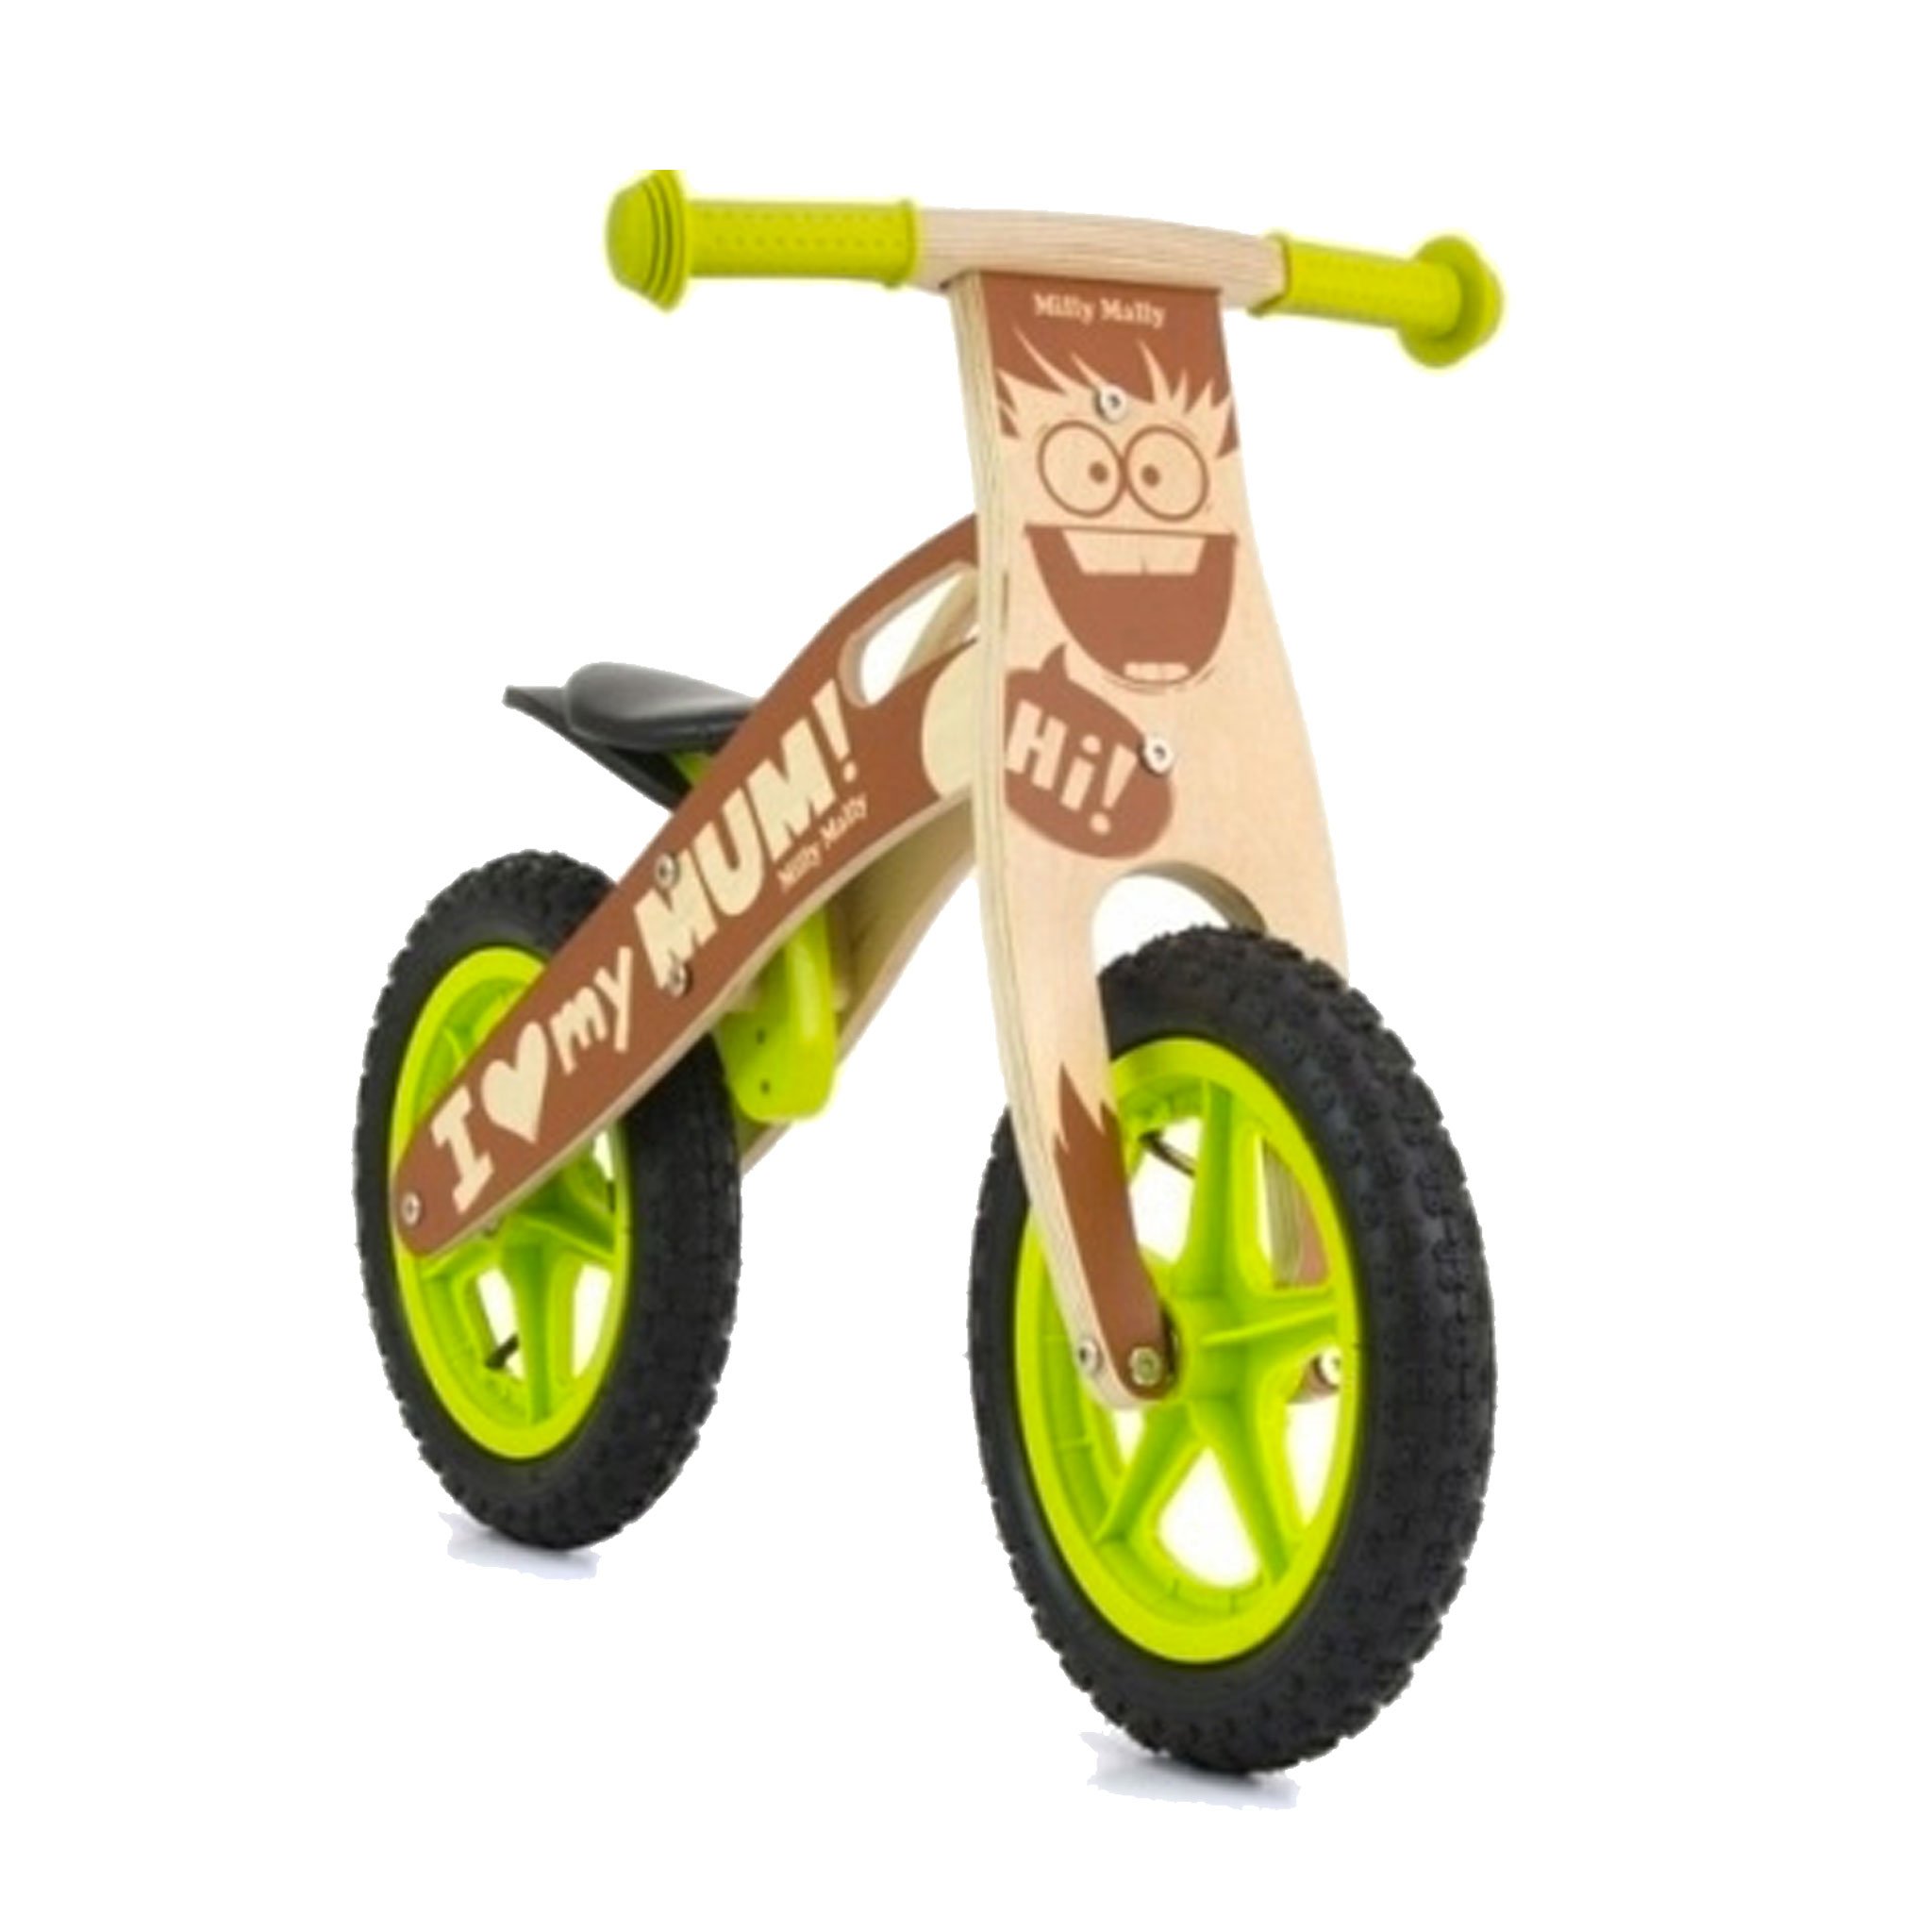 PM0472-cavalcabile-ruote-bici-senza-pedali-bambini-equilibrio-balance-bike-giochi-esterno-mobilita-crescita-legno-betulla-all-terrain.jpg